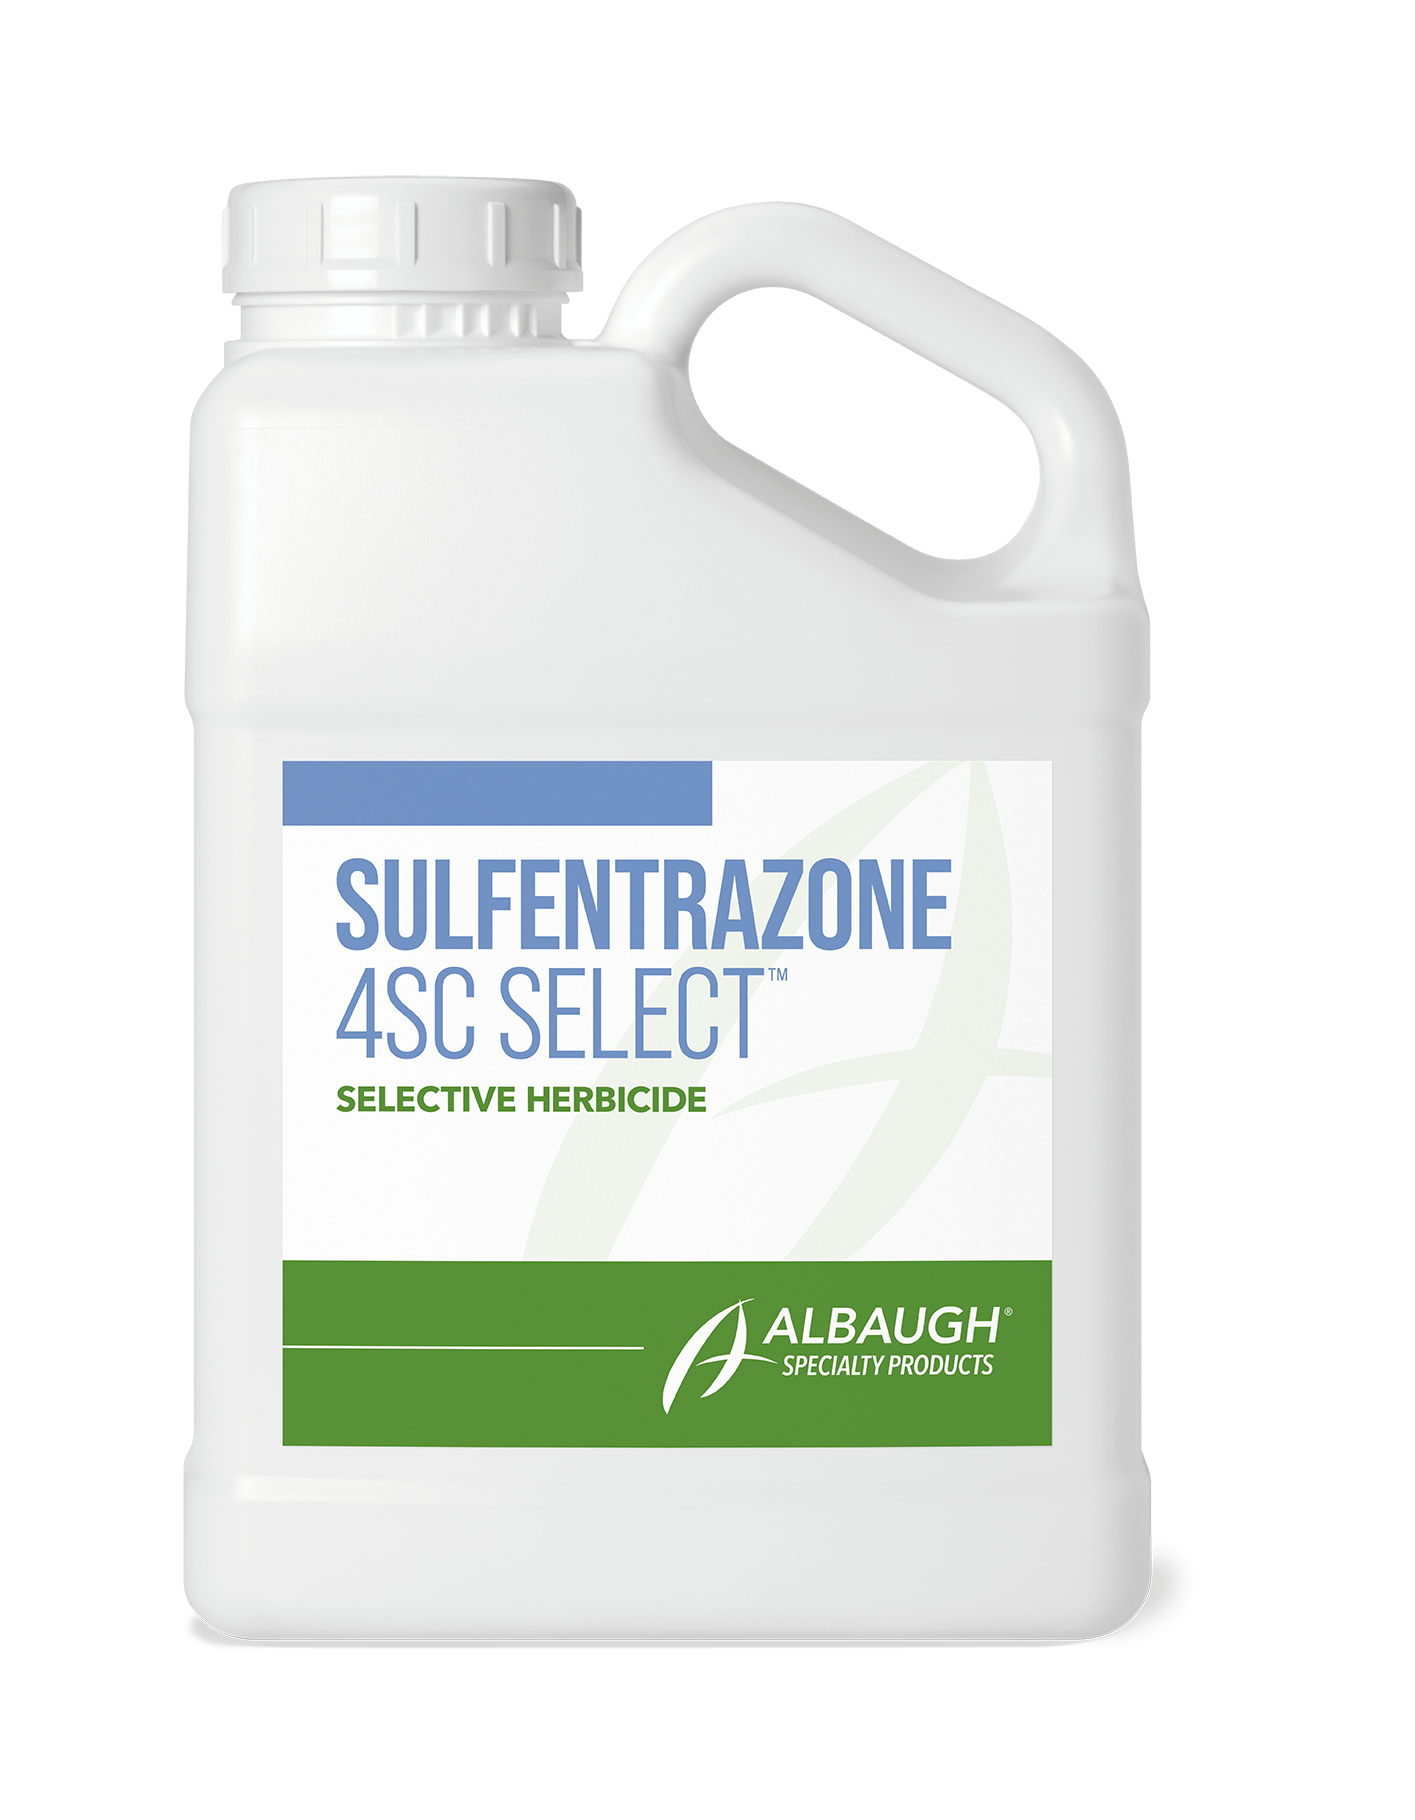 Sulfentrazone 4SC Select™